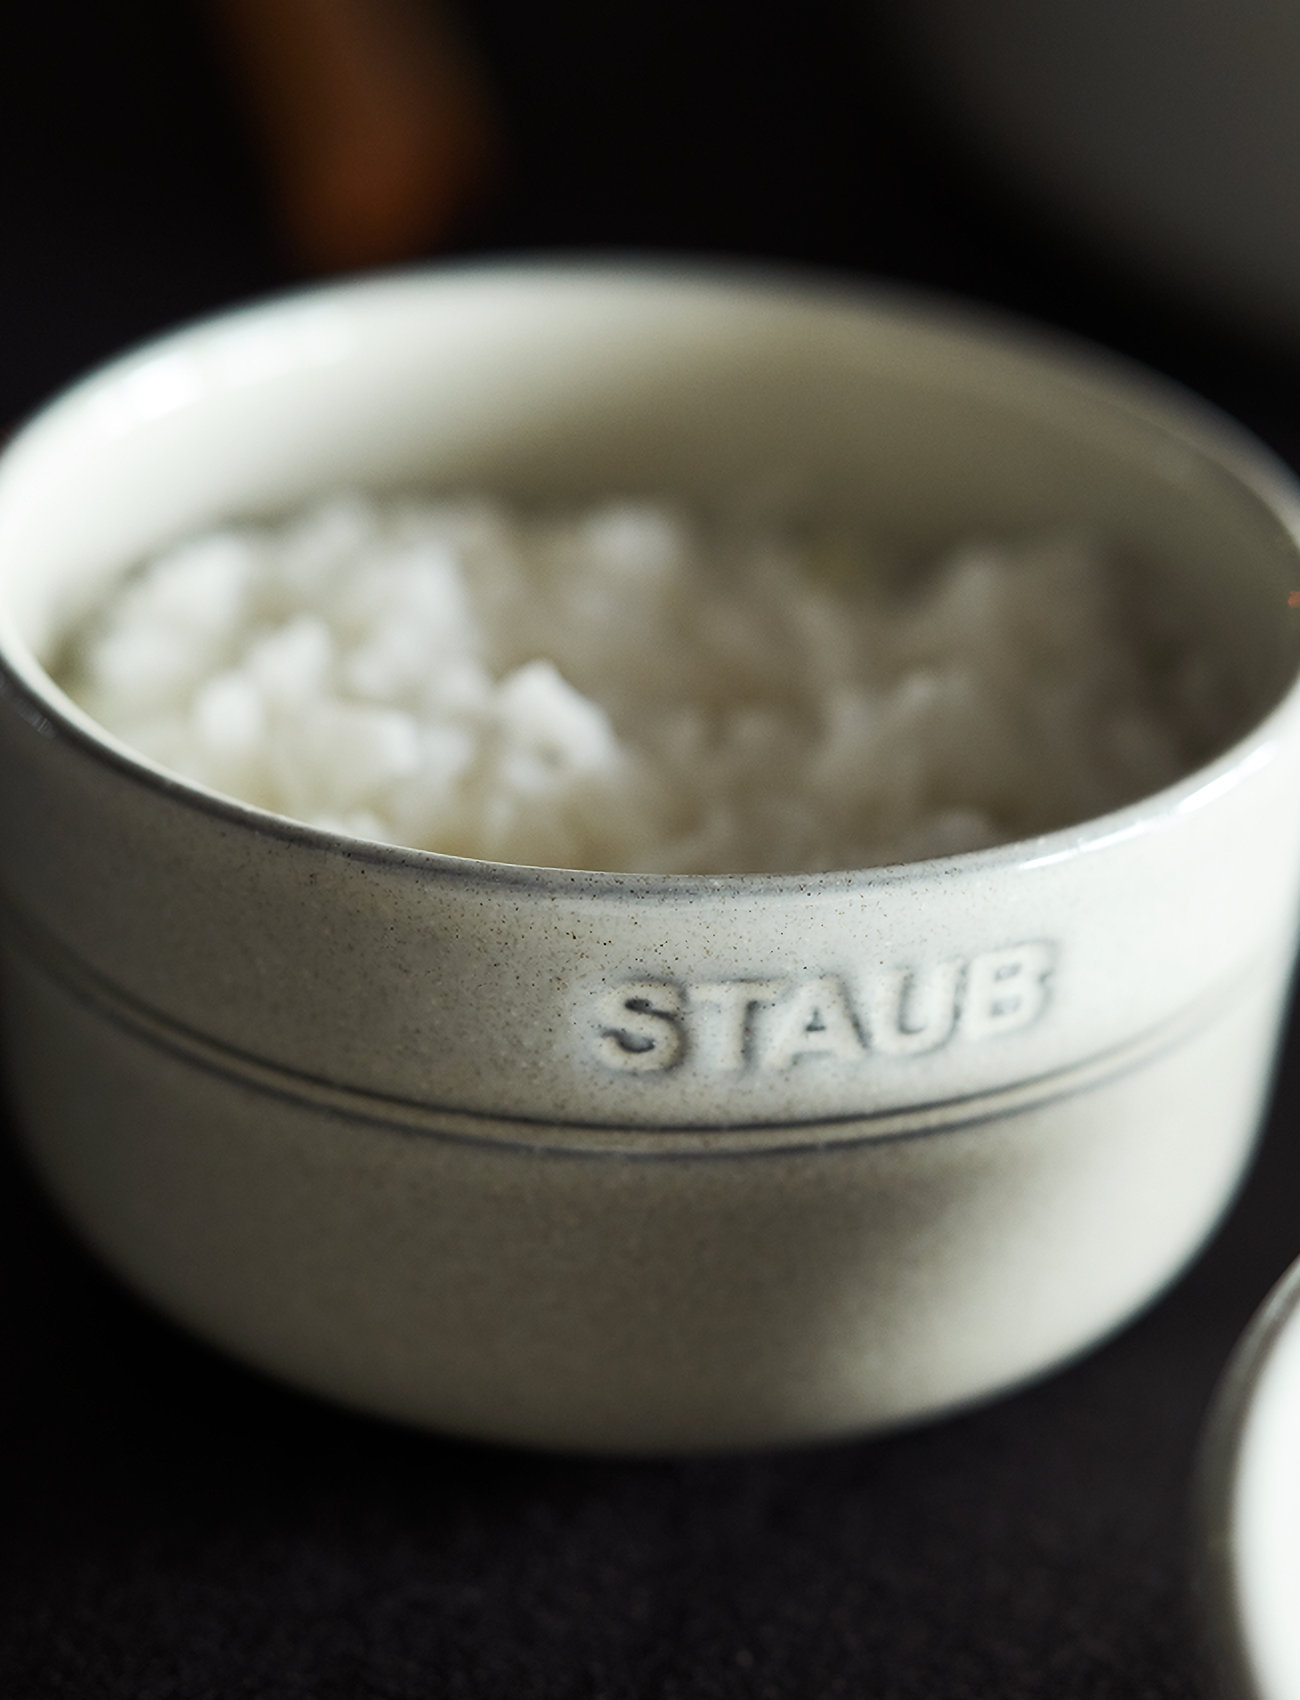 STAUB - Staub, Bowl 10 cm, white truffle - lowest prices - grey - 1